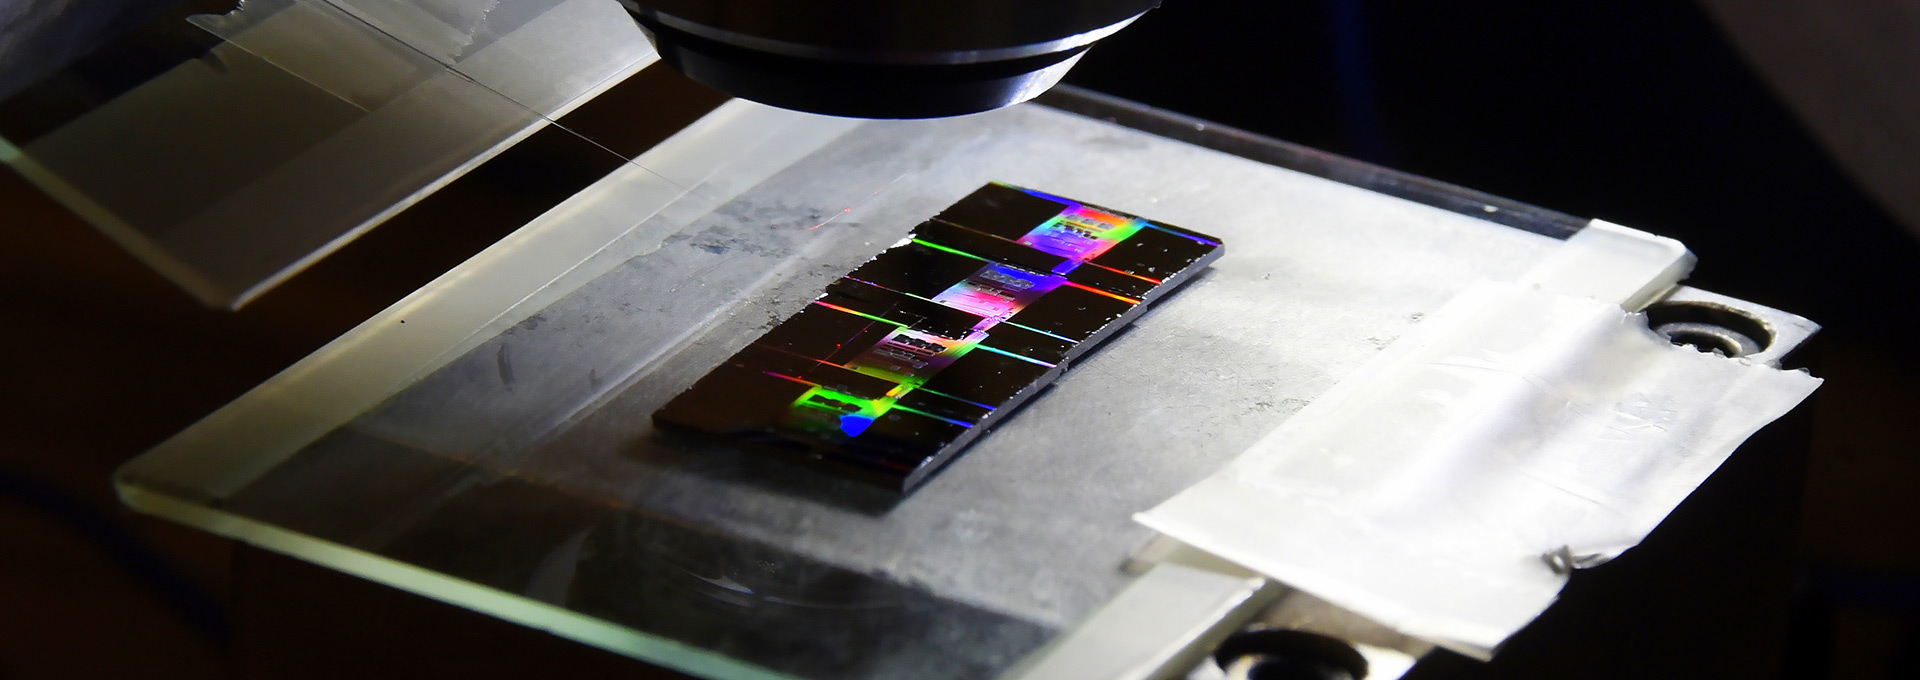 Luz conduzida por fibra óptica ilumina chips de silício, produzindo um efeito de arco-íris, sobre um fundo preto 